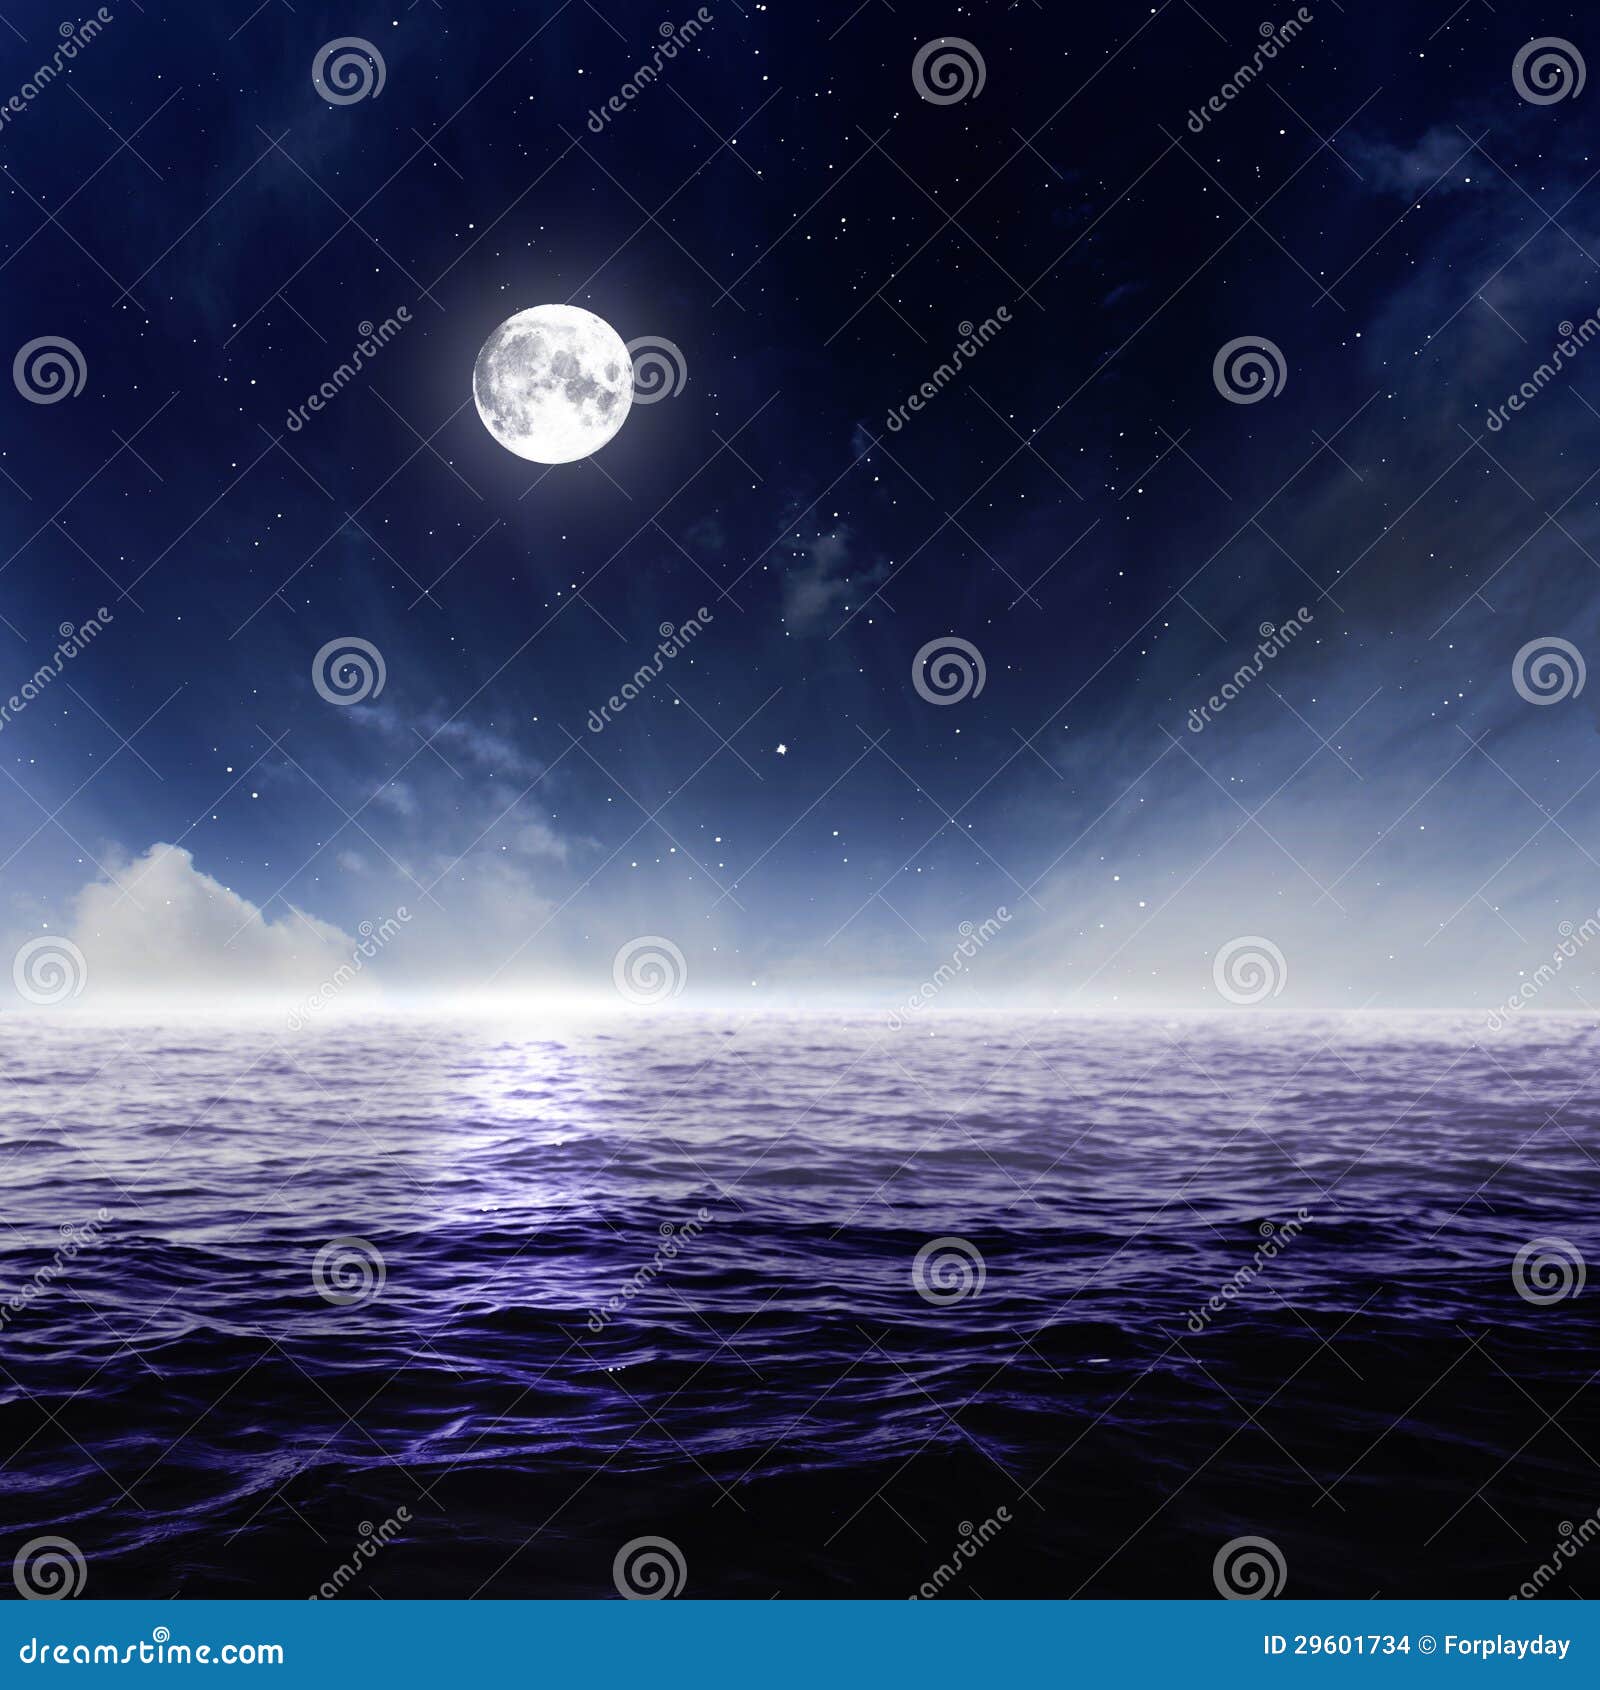 full moon in night sky over moonlit water